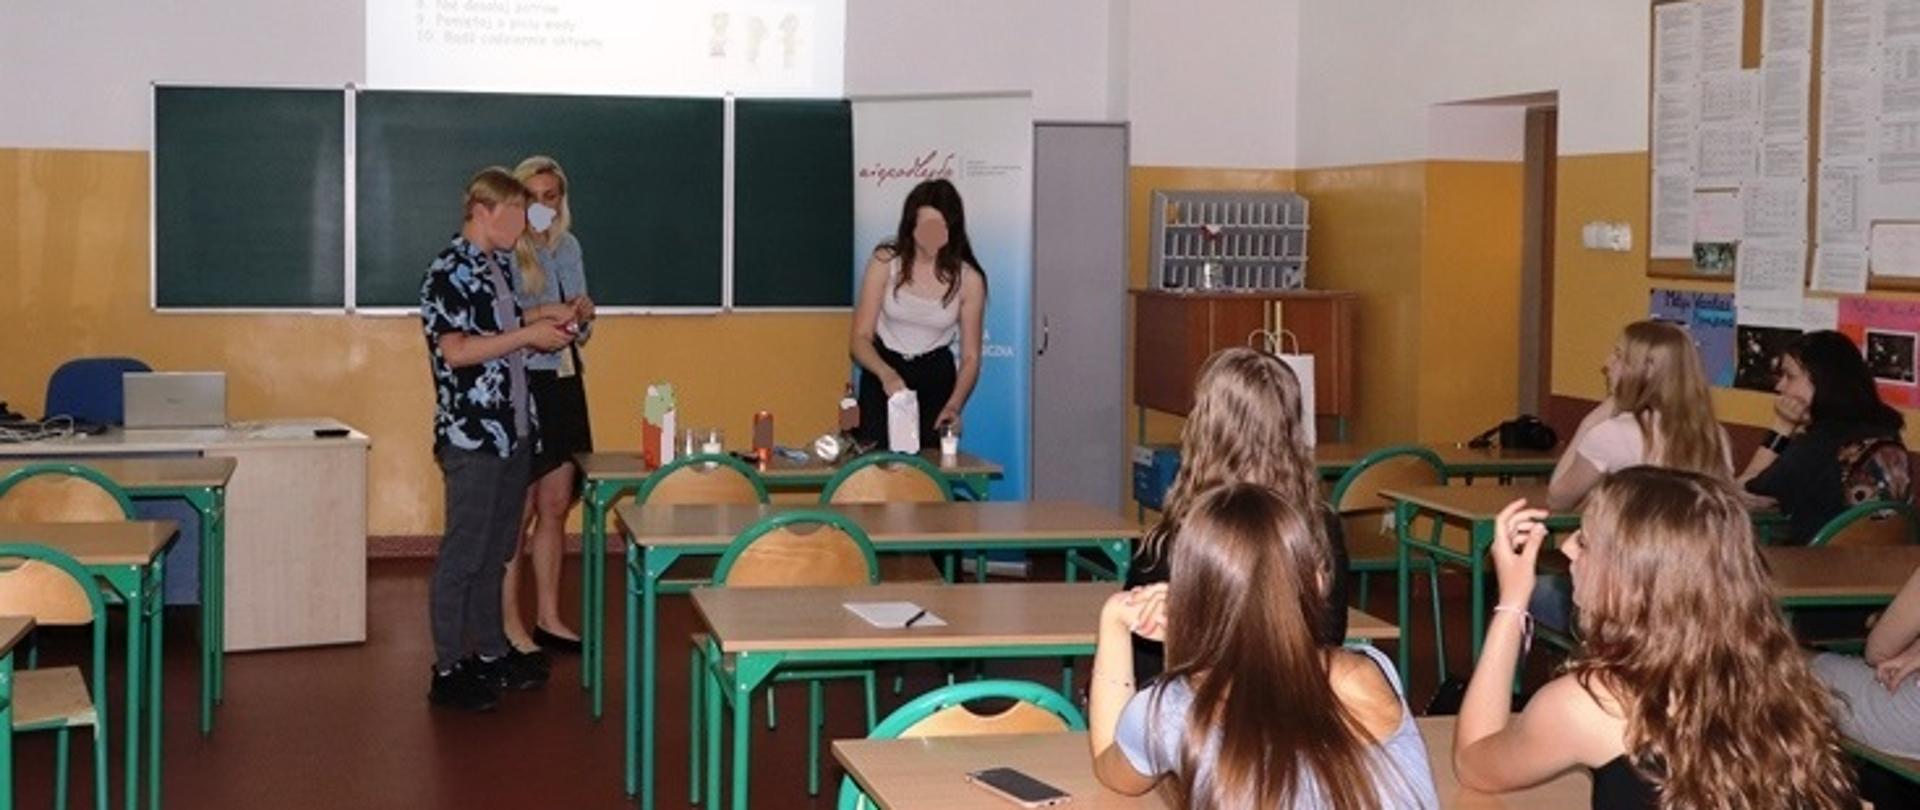 Zdjęcie przedstawia pracownika WSSE w Gorzowie Wlkp., ucznia i uczennice liceum w trakcie warsztatów (sprawdzanie ilości cukru w popularnych produktach spożywczych). Po prawej stronie zdjęcia widoczni są inni uczniowie siedzący w ławkach.